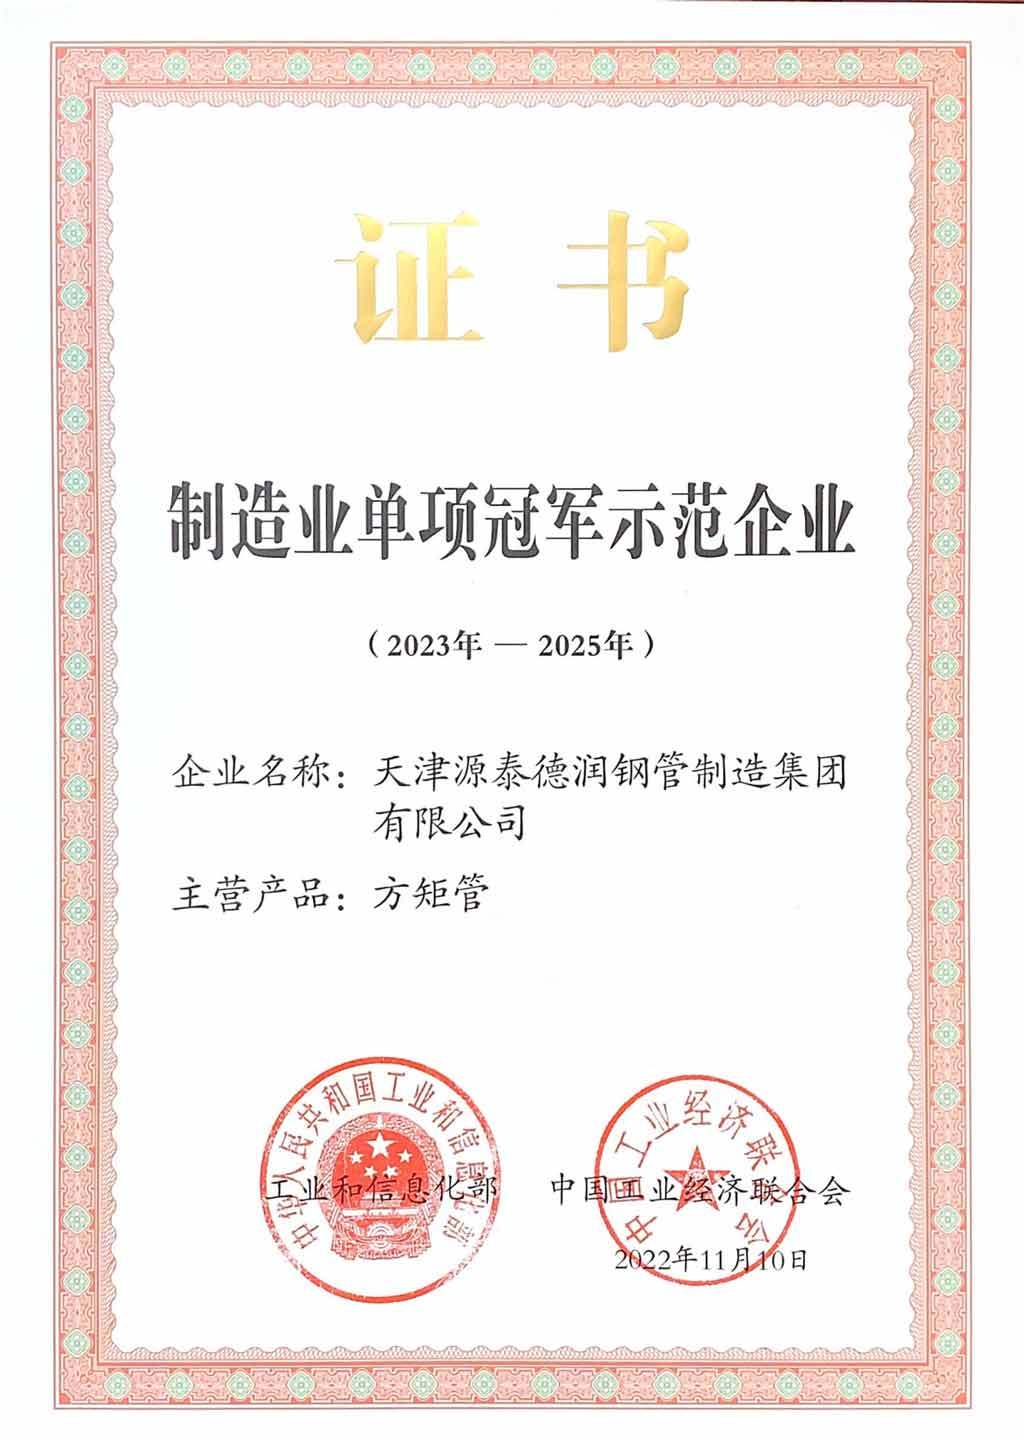 Tianjin Yuantai Derun Steel Pipe Manufacturing Group co., Ltd. ganó el séptimo lote de empresas campeonas individuales nacionales de fabricación con tubos cuadrados prestados ".